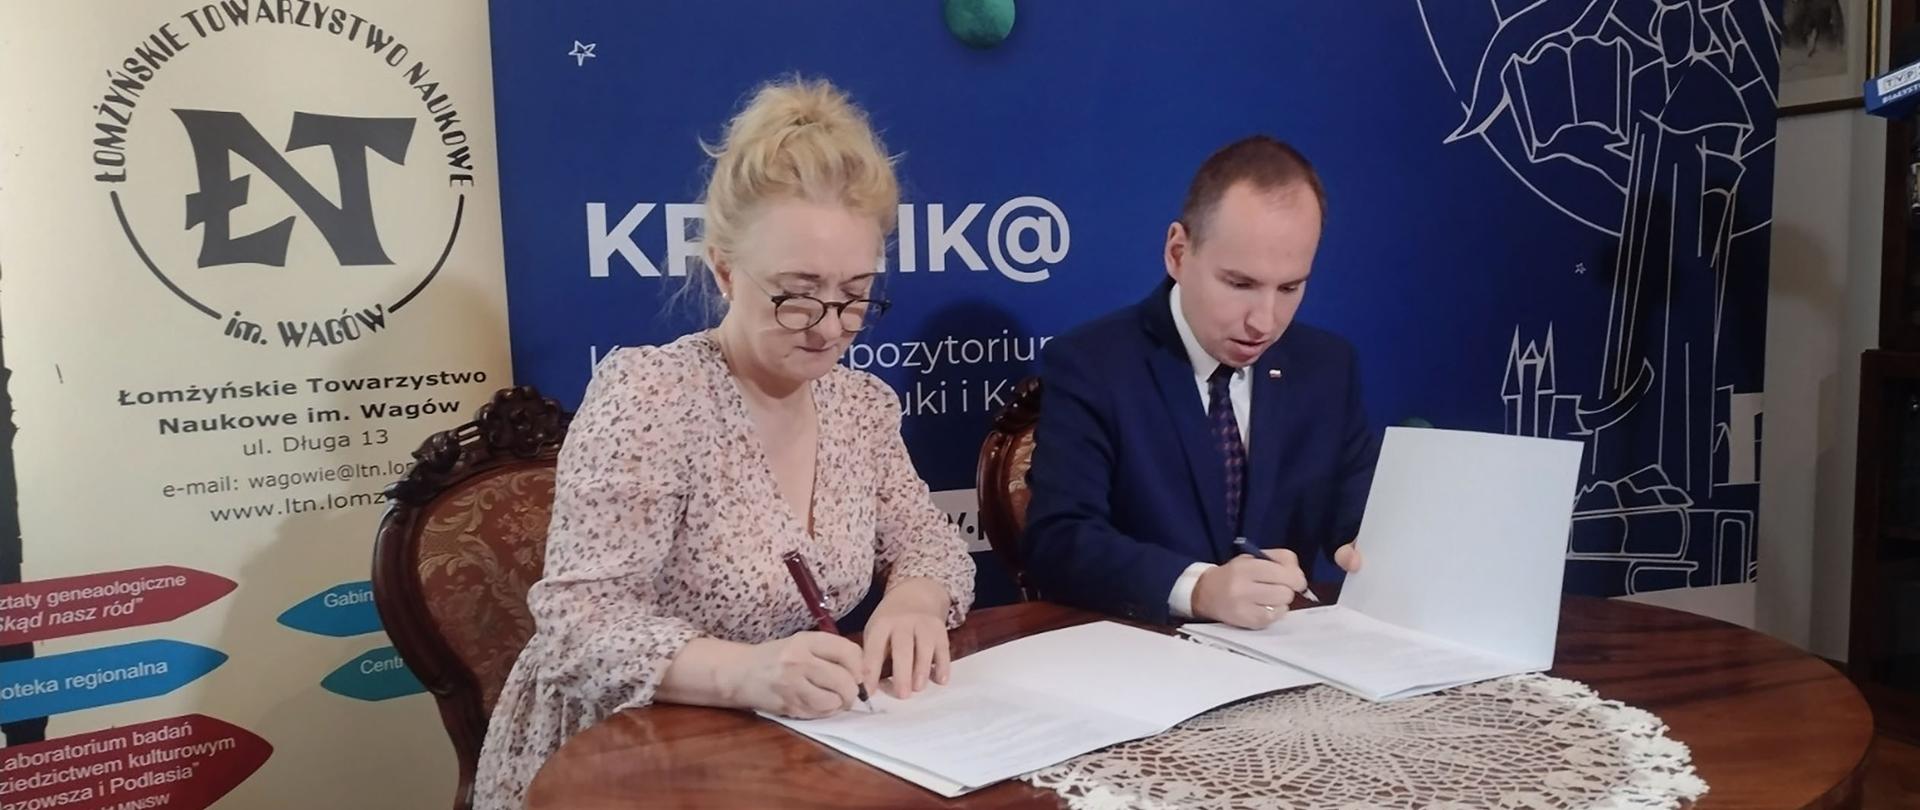 Porozumienie pomiędzy Łomżyńskim Towarzystwem Naukowym im. Wagów i portalem KRONIK@ już podpisane!